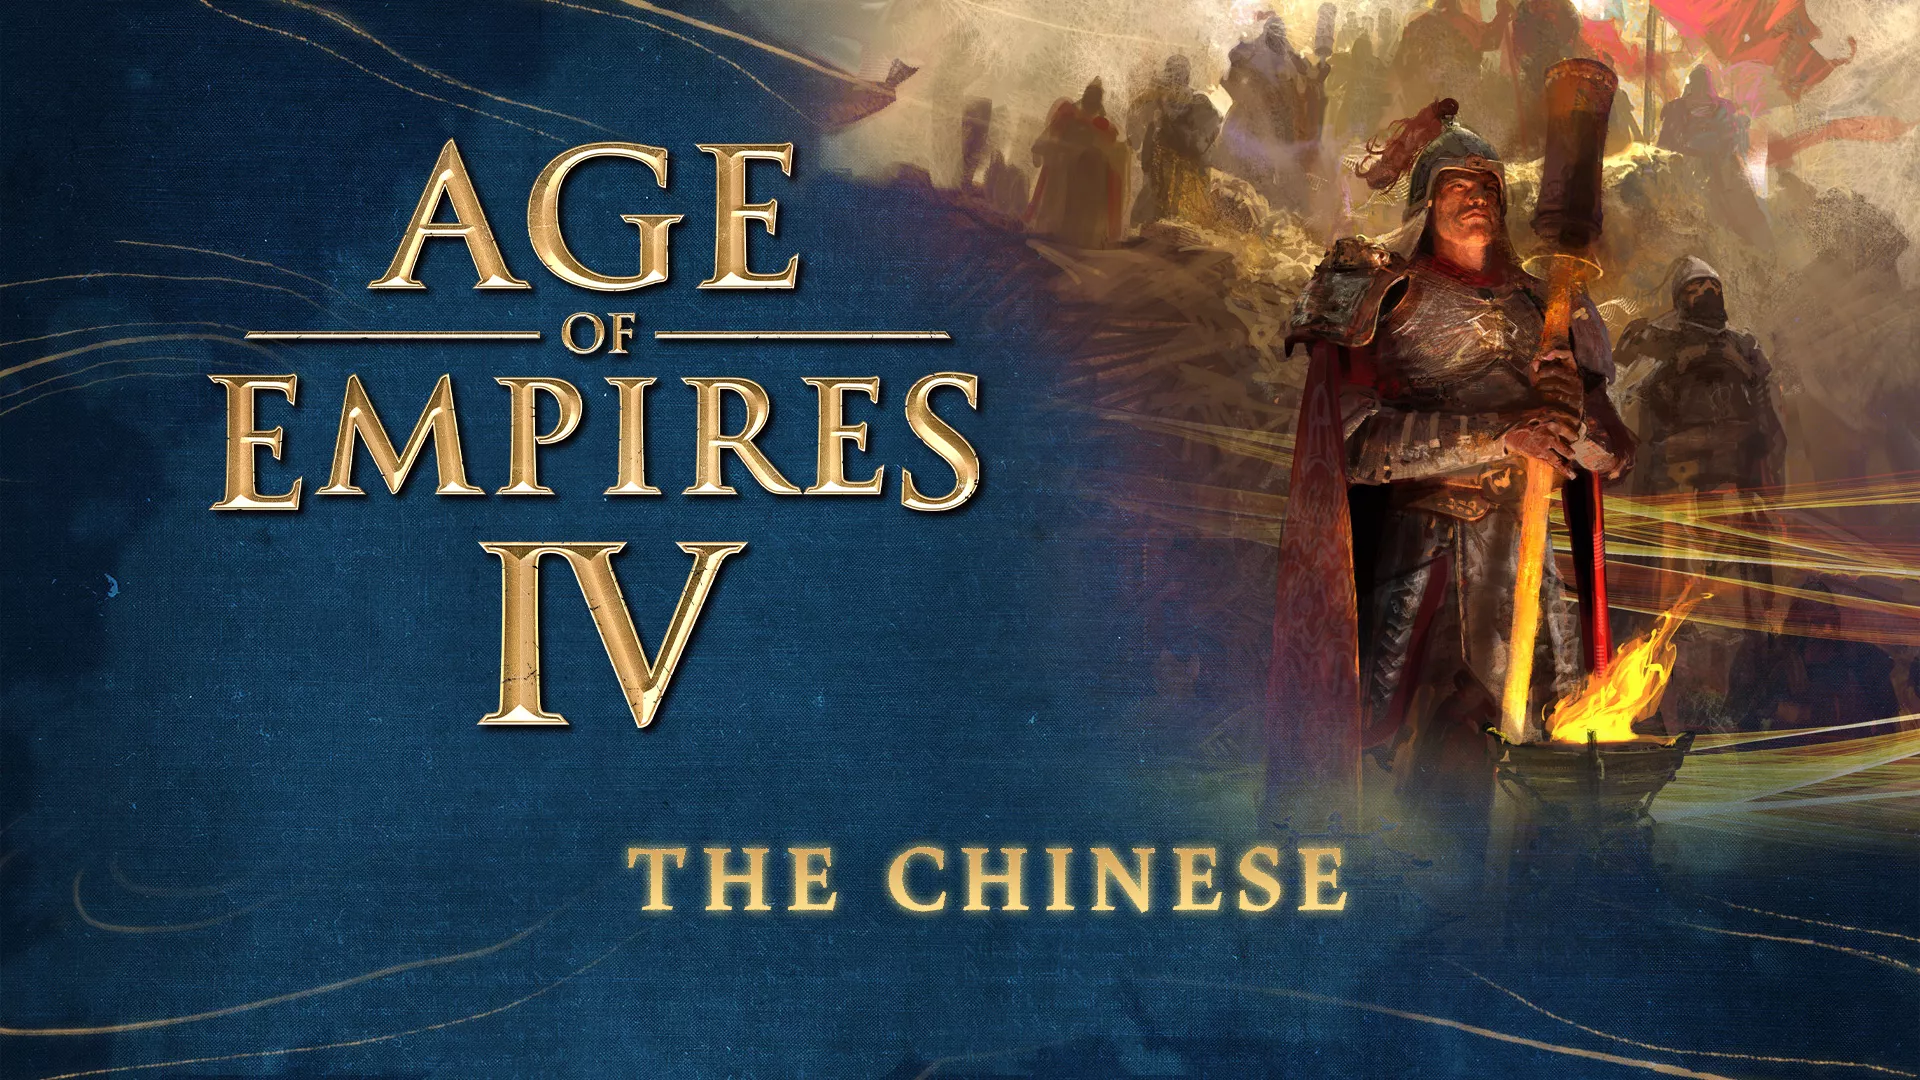 Age of Empires IV stellt diese Woche die chinesische Fraktion vor Heropic